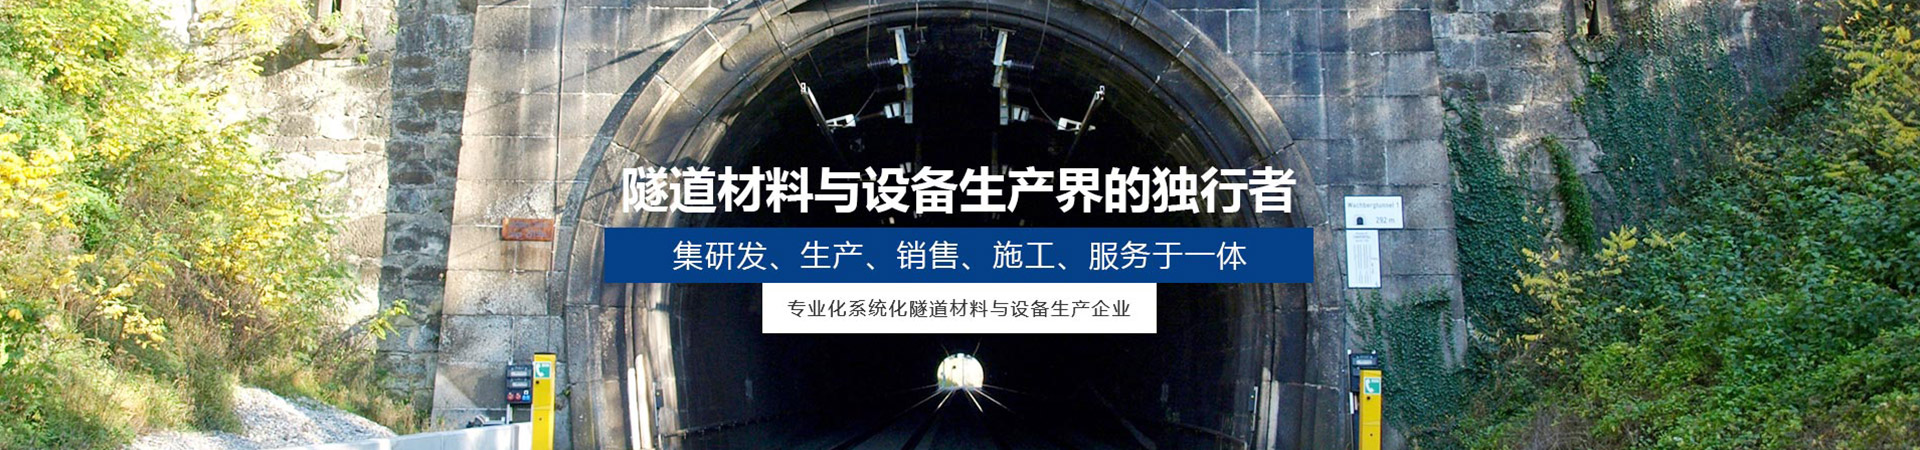 隧道混凝土挡板价格_隧道建筑项目合作公司-四川皓德斯新材料科技有限公司官网